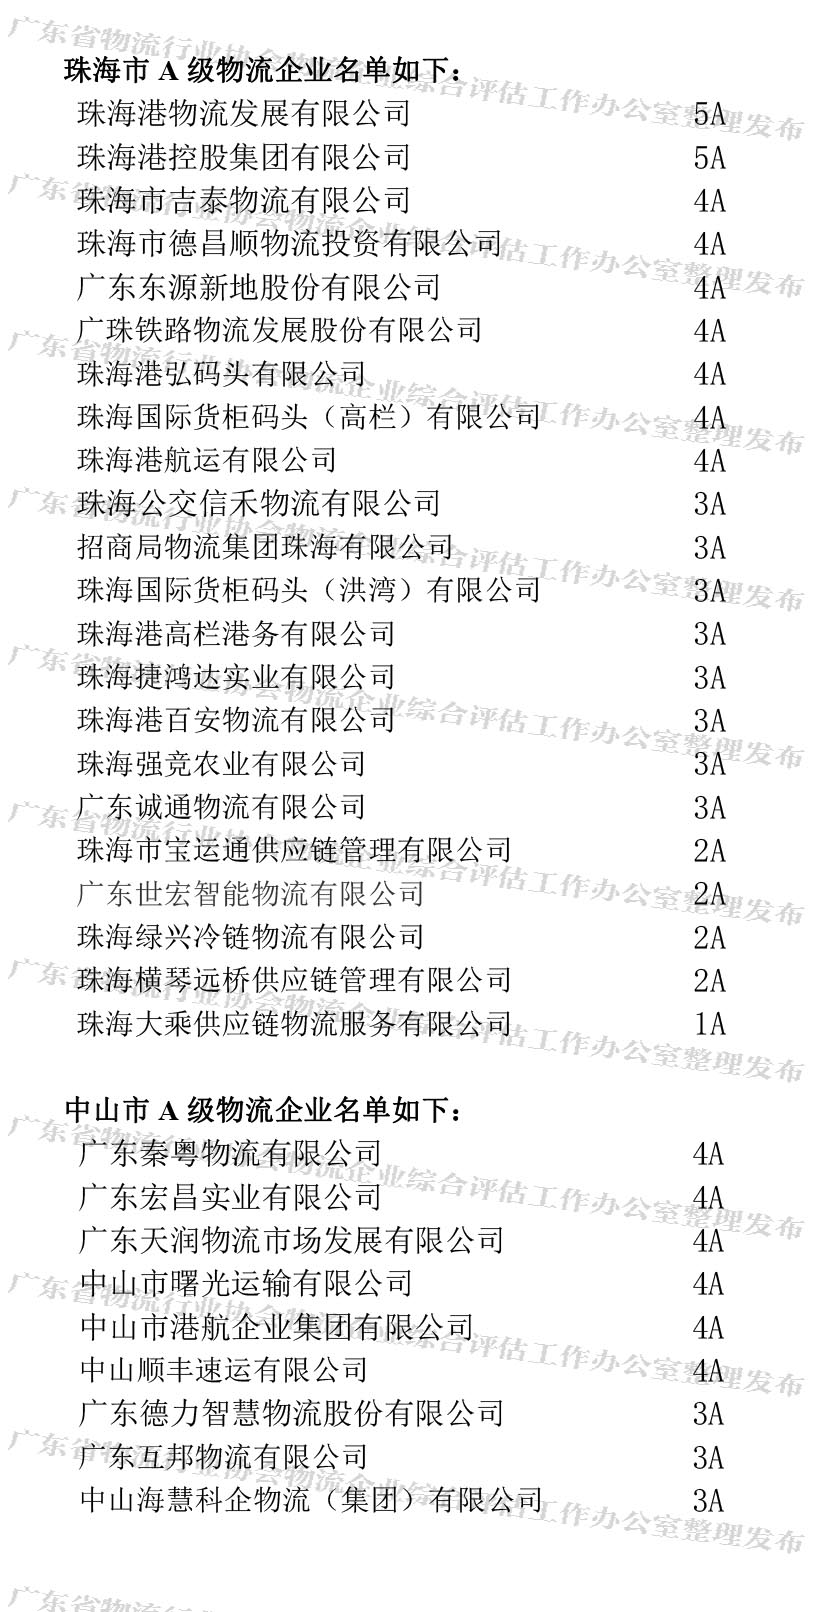 广东省A级物流企业名单（珠海、中山地区）(1).jpg